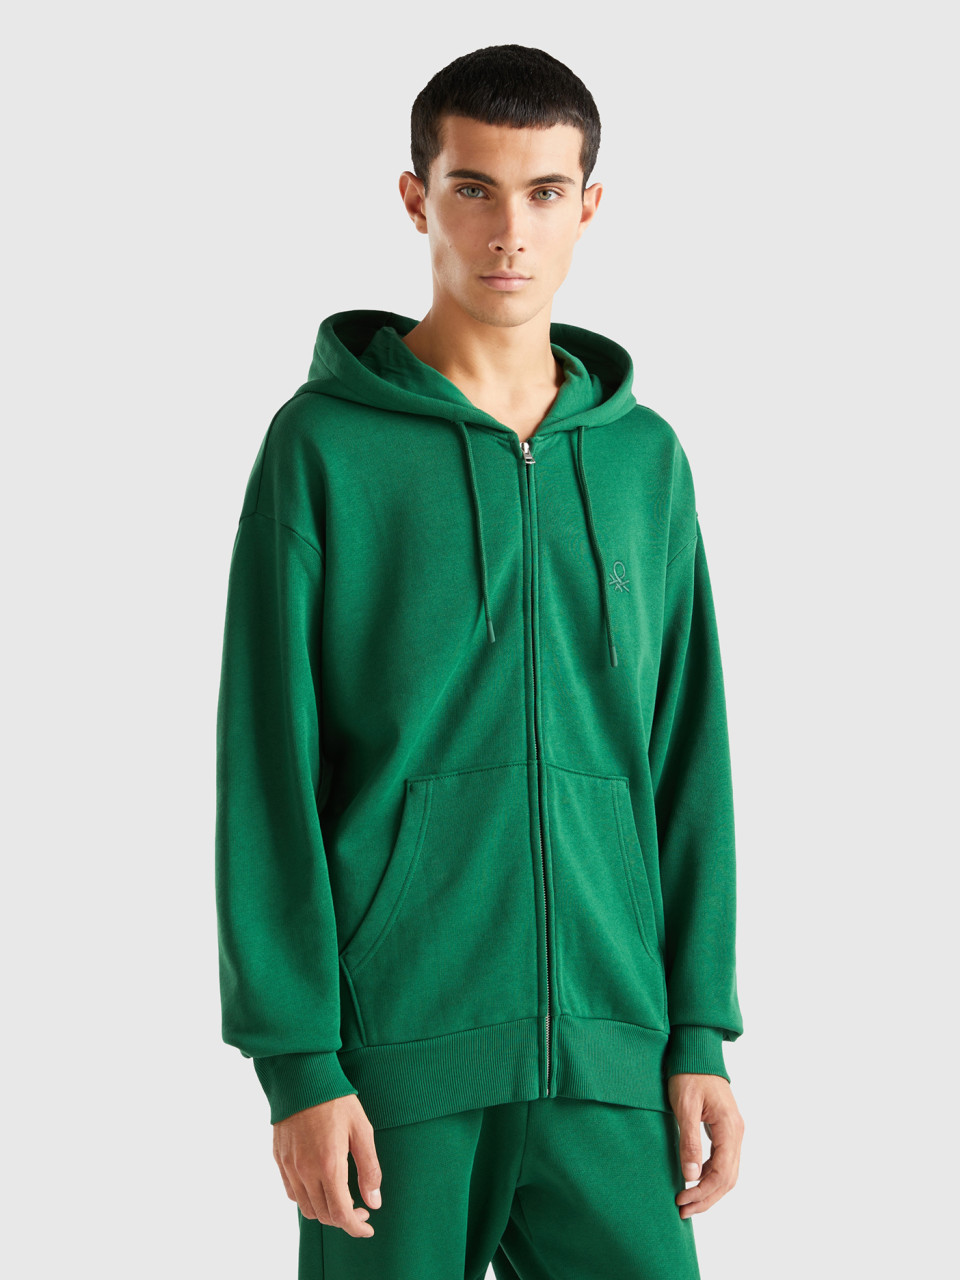 Benetton, Warm Hoodie With Zip, Green, Men